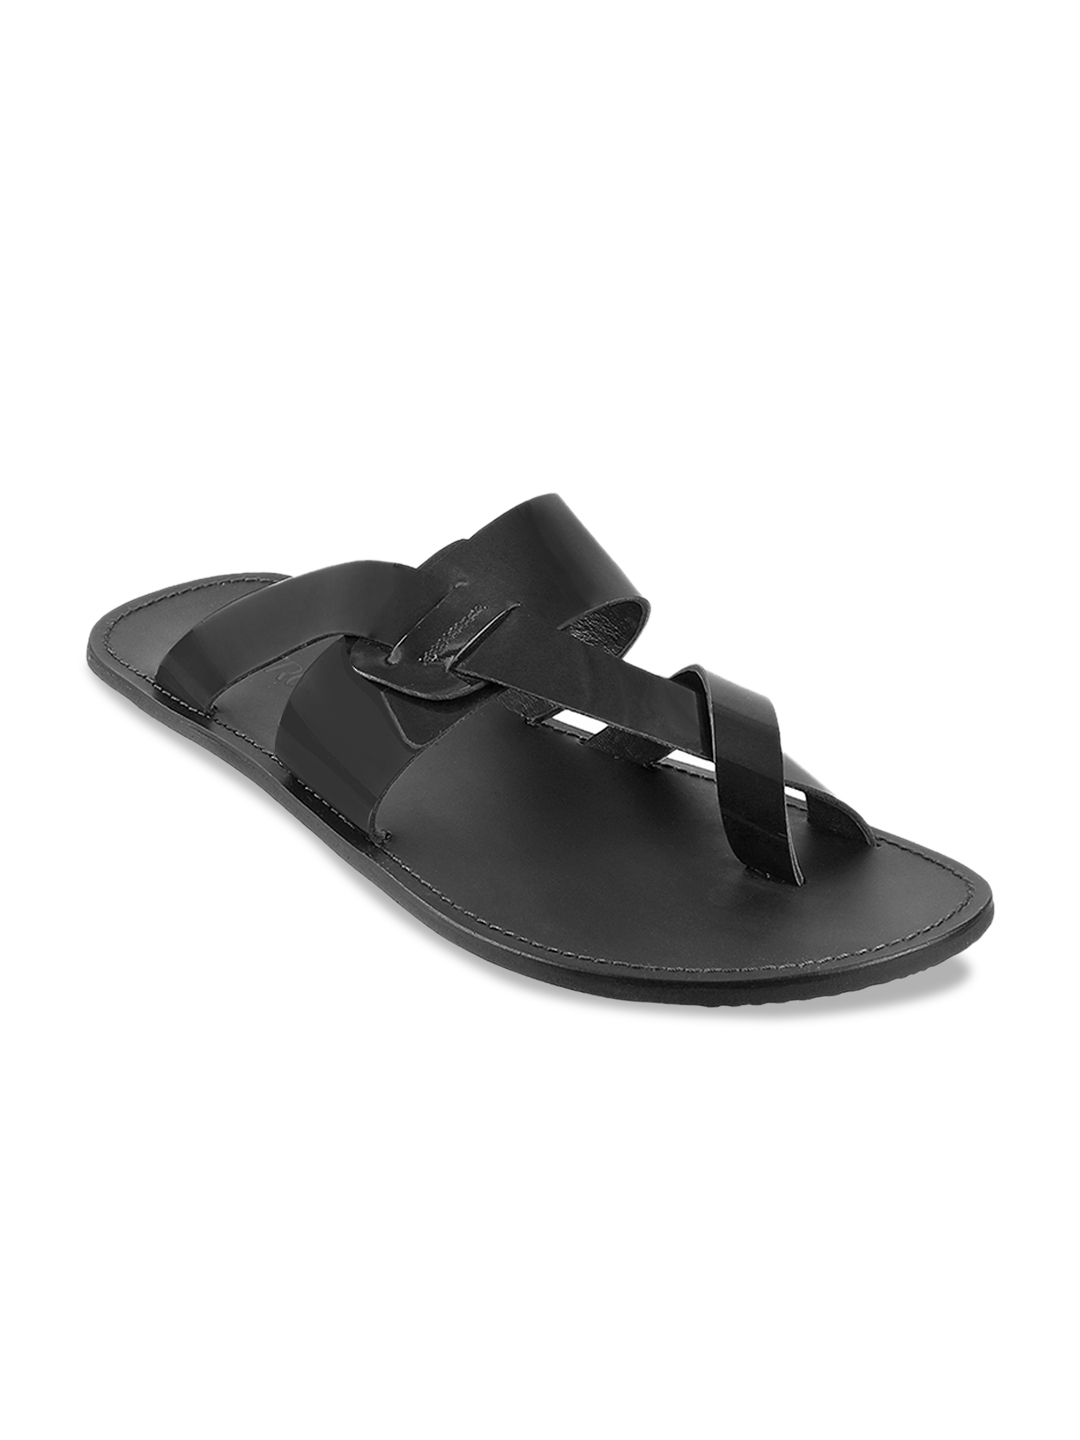 Buy Metro Men Black Comfort Sandals - Sandals for Men 11609878 | Myntra